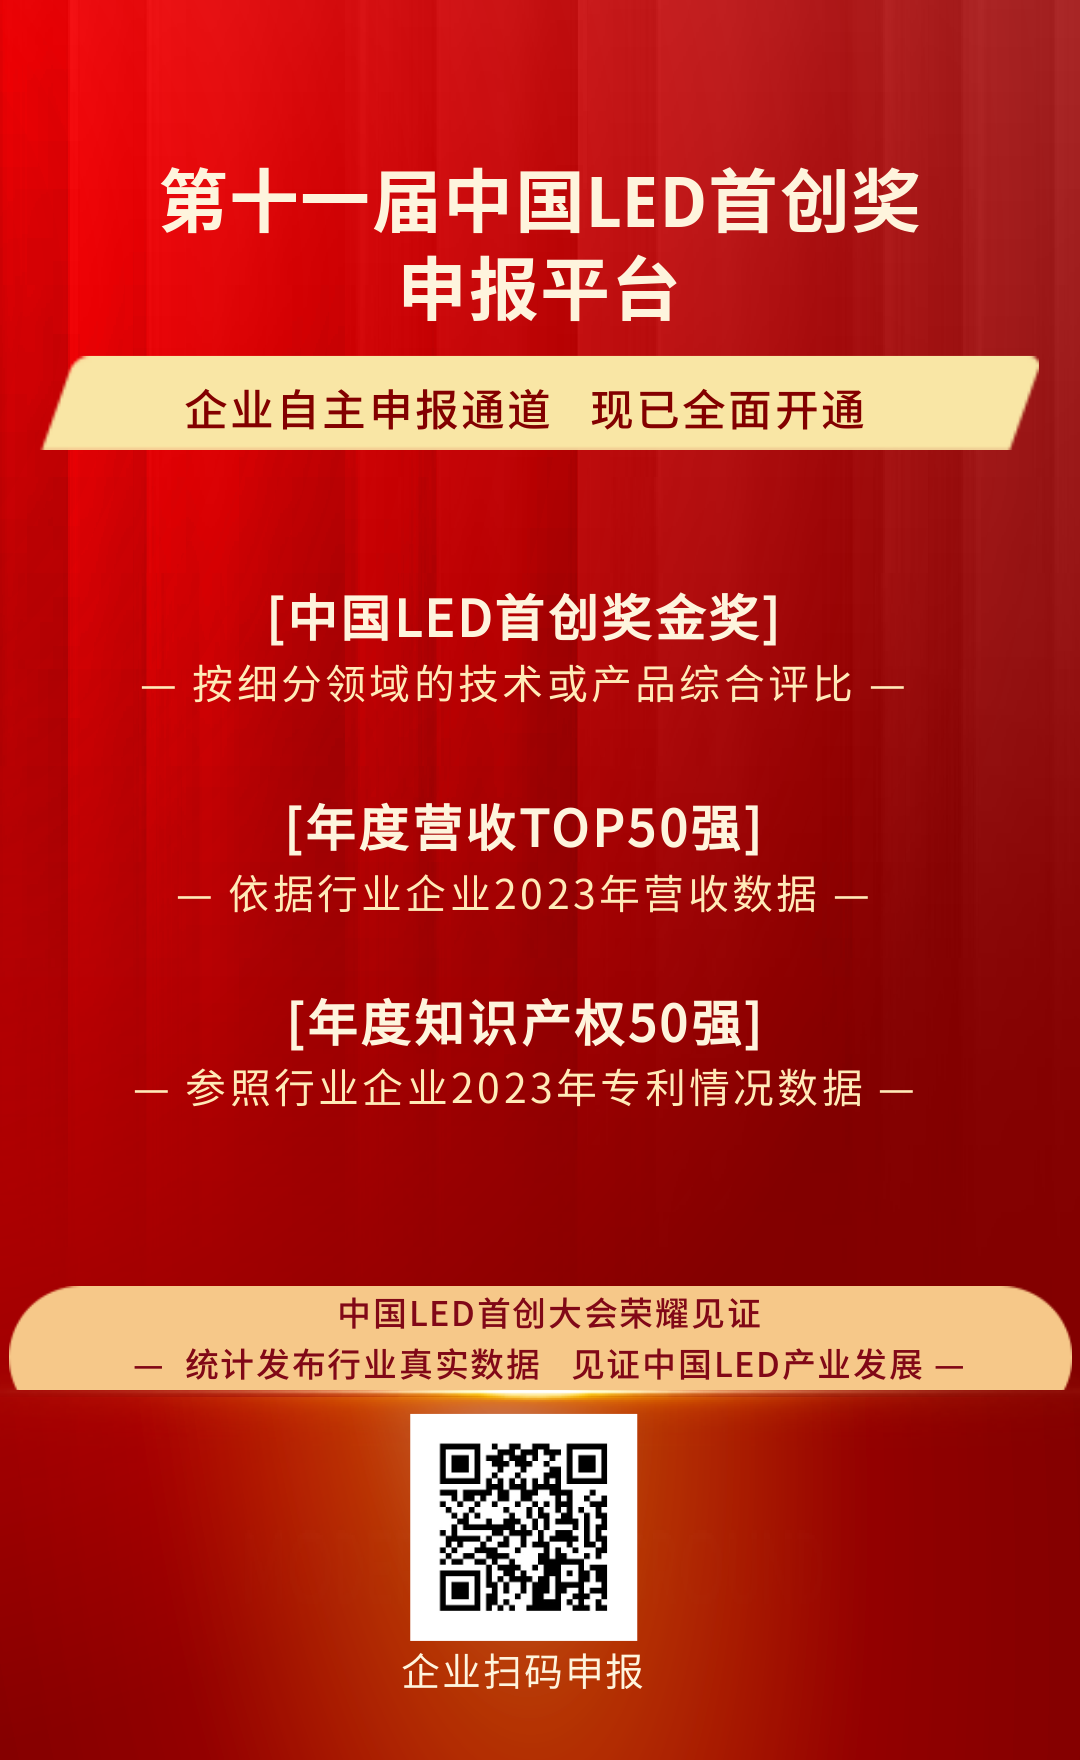 关于第十一届中国LED首创奖申报的通知